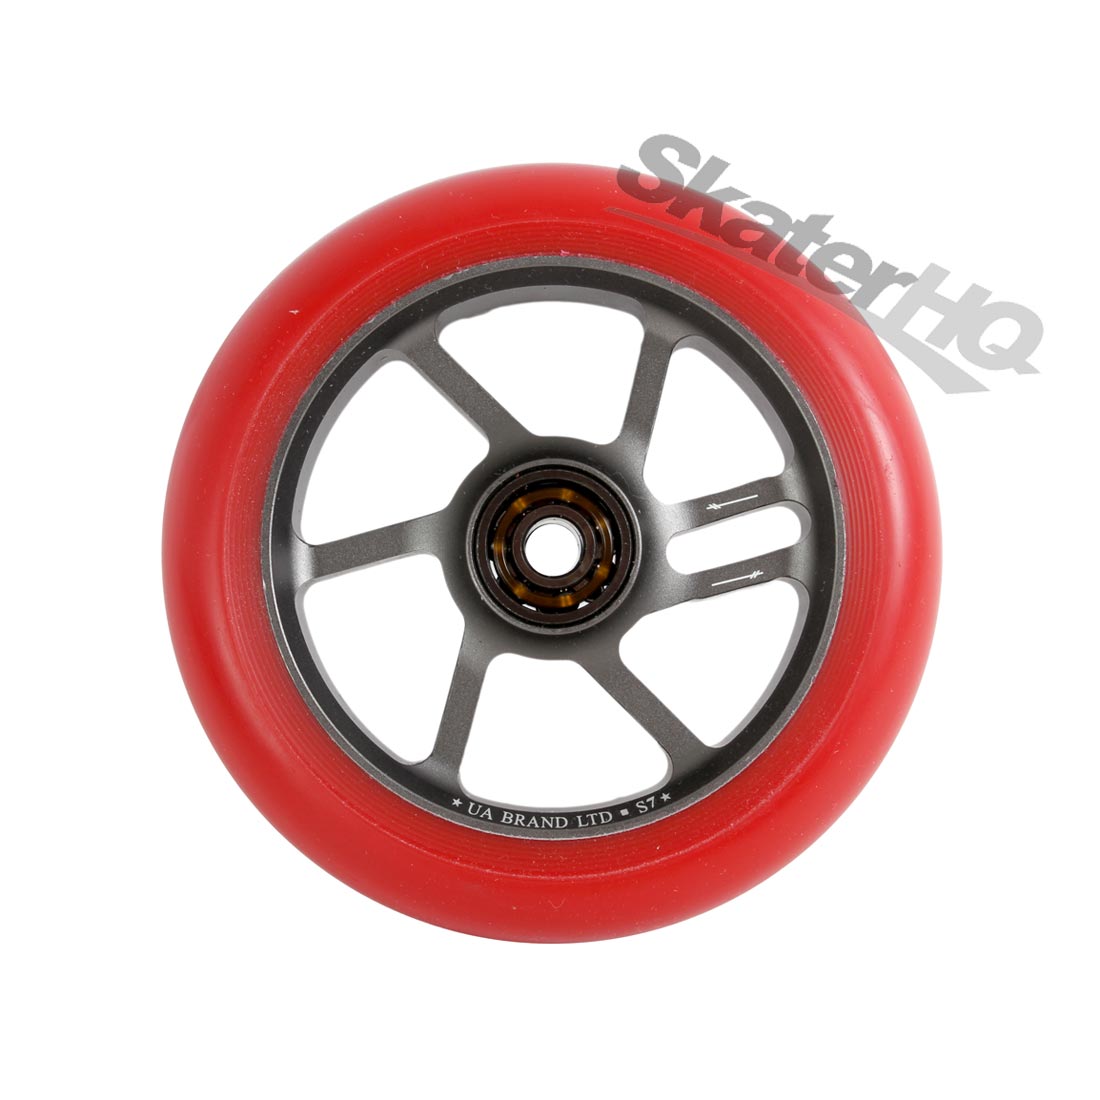 UrbanArtt S7 110mm Red/Grey w/ Bearings Scooter Wheels